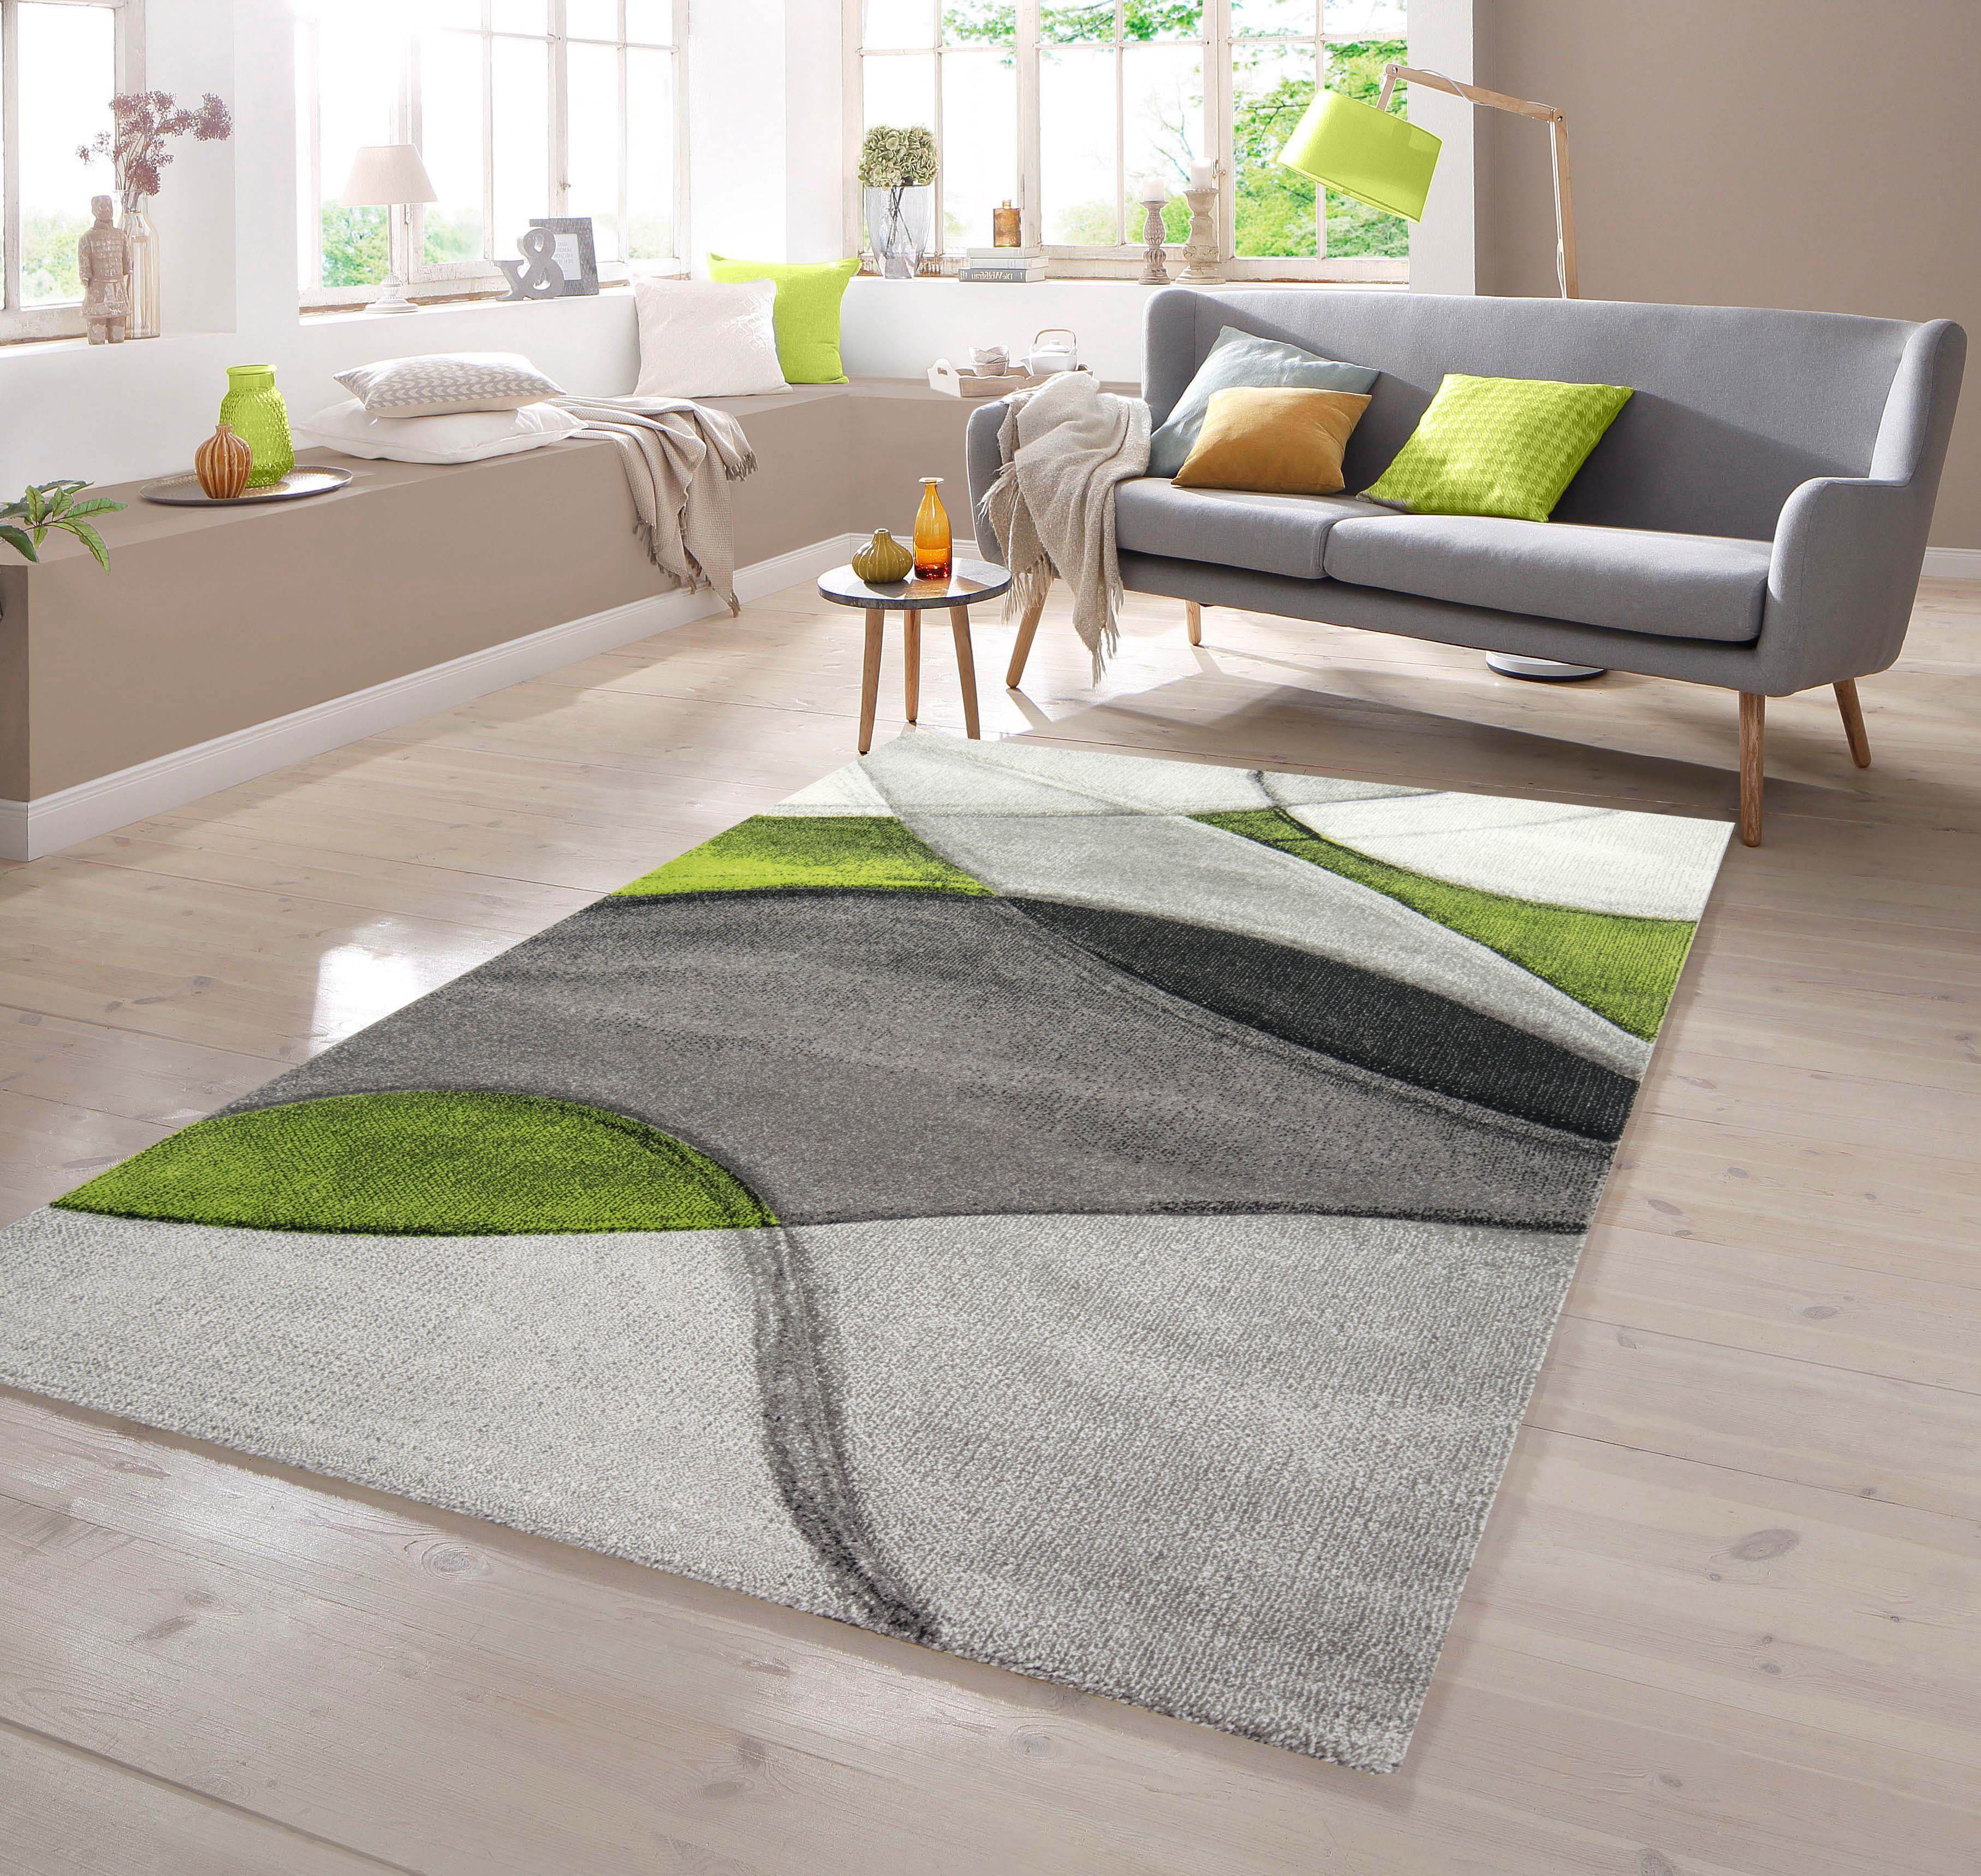 Teppich Teppich modern abstrakt in grün grau schwarz, TeppichHome24, rechteckig